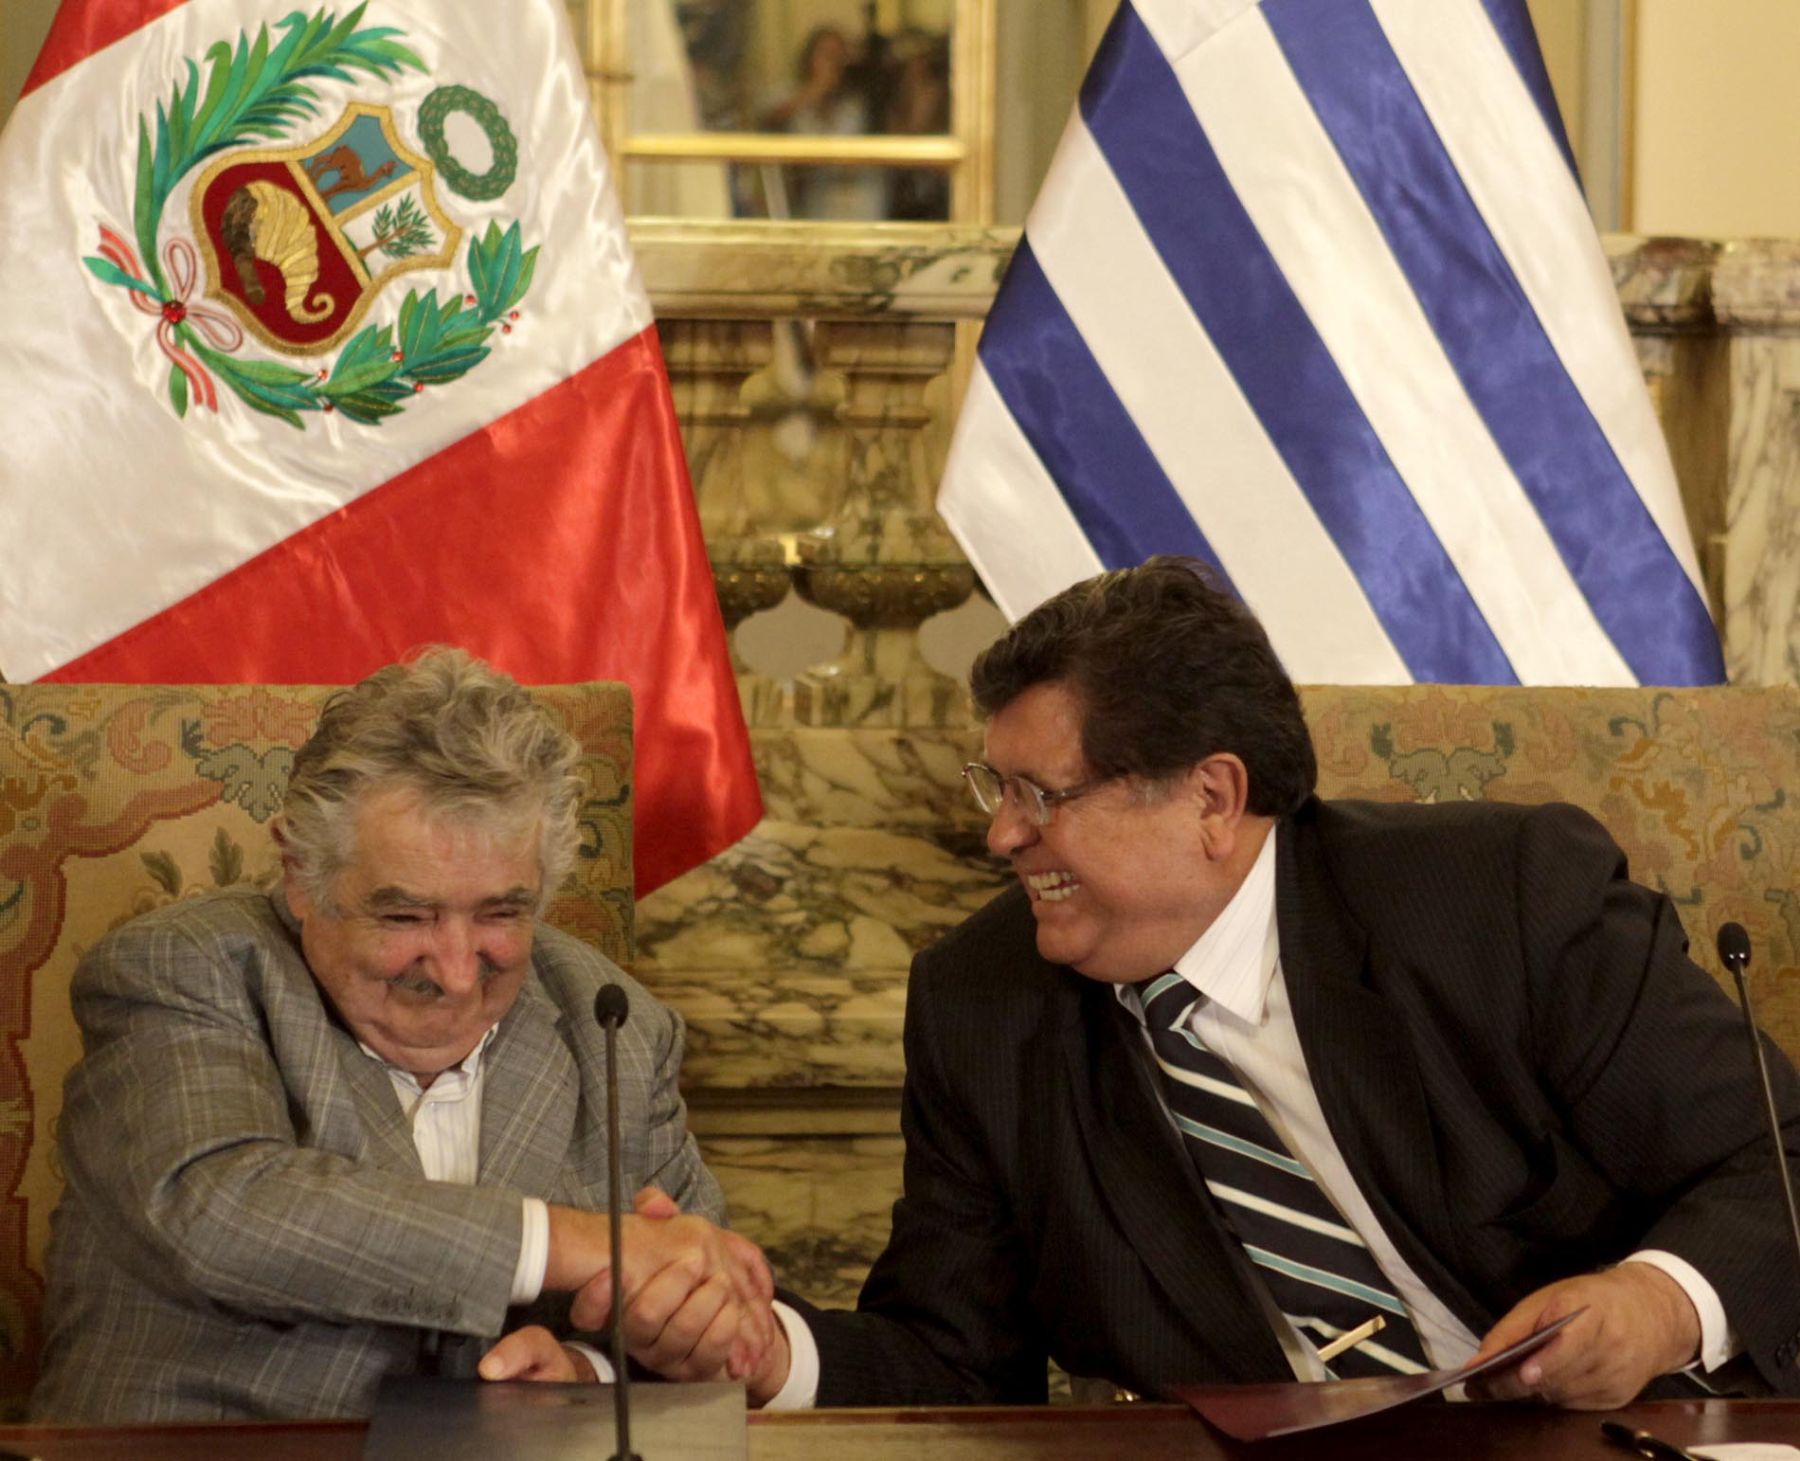 El Jefe del Estado, Alan García Pérez; y su homólogo de Uruguay, José Mujica, firmaron acuerdos bilaterales en el Salón Dorado de Palacio de Gobierno. Foto: ANDINA/Alberto Orbegoso.